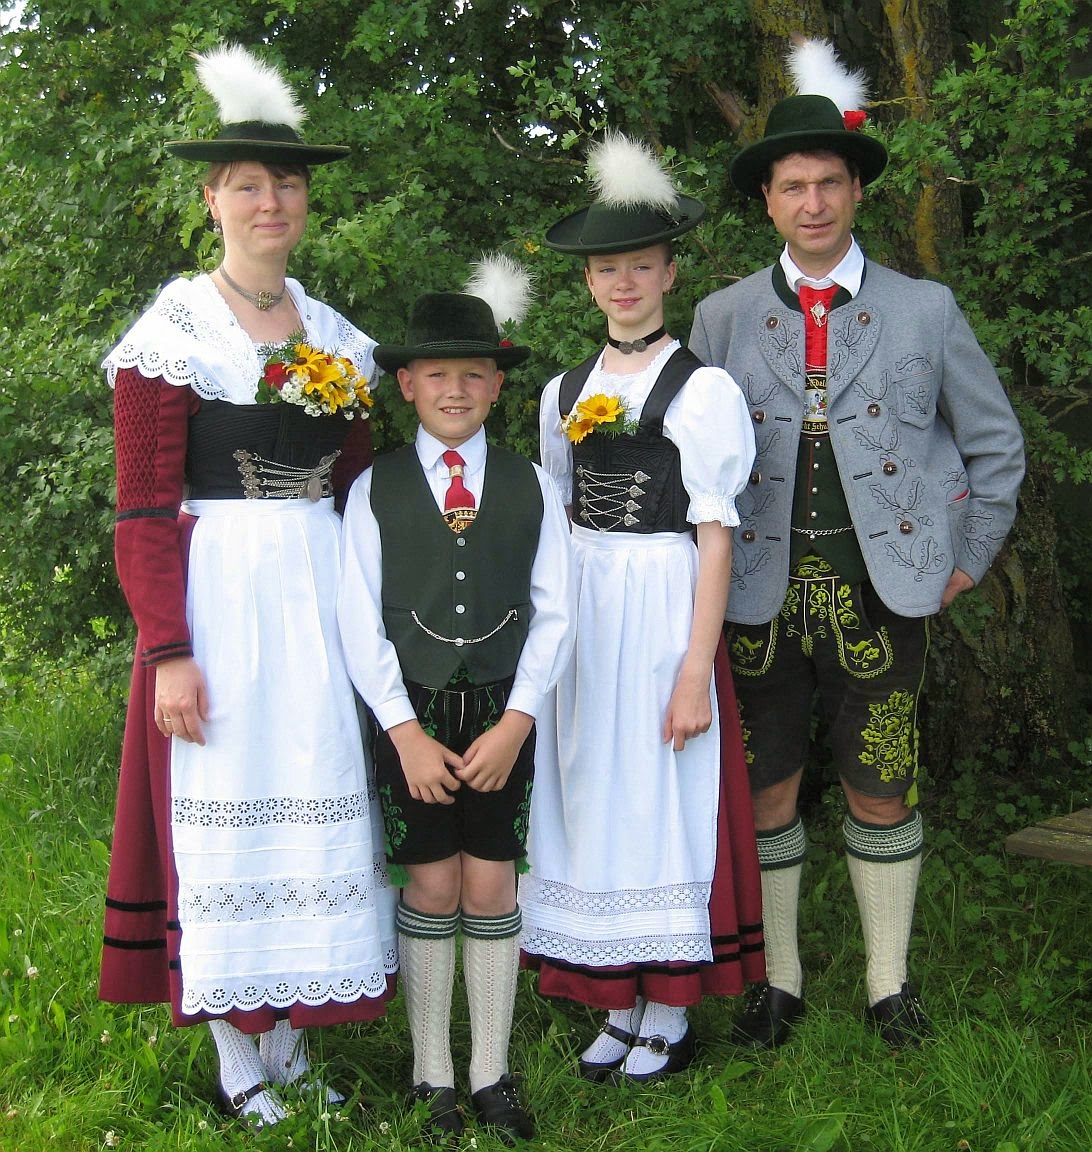 german dress